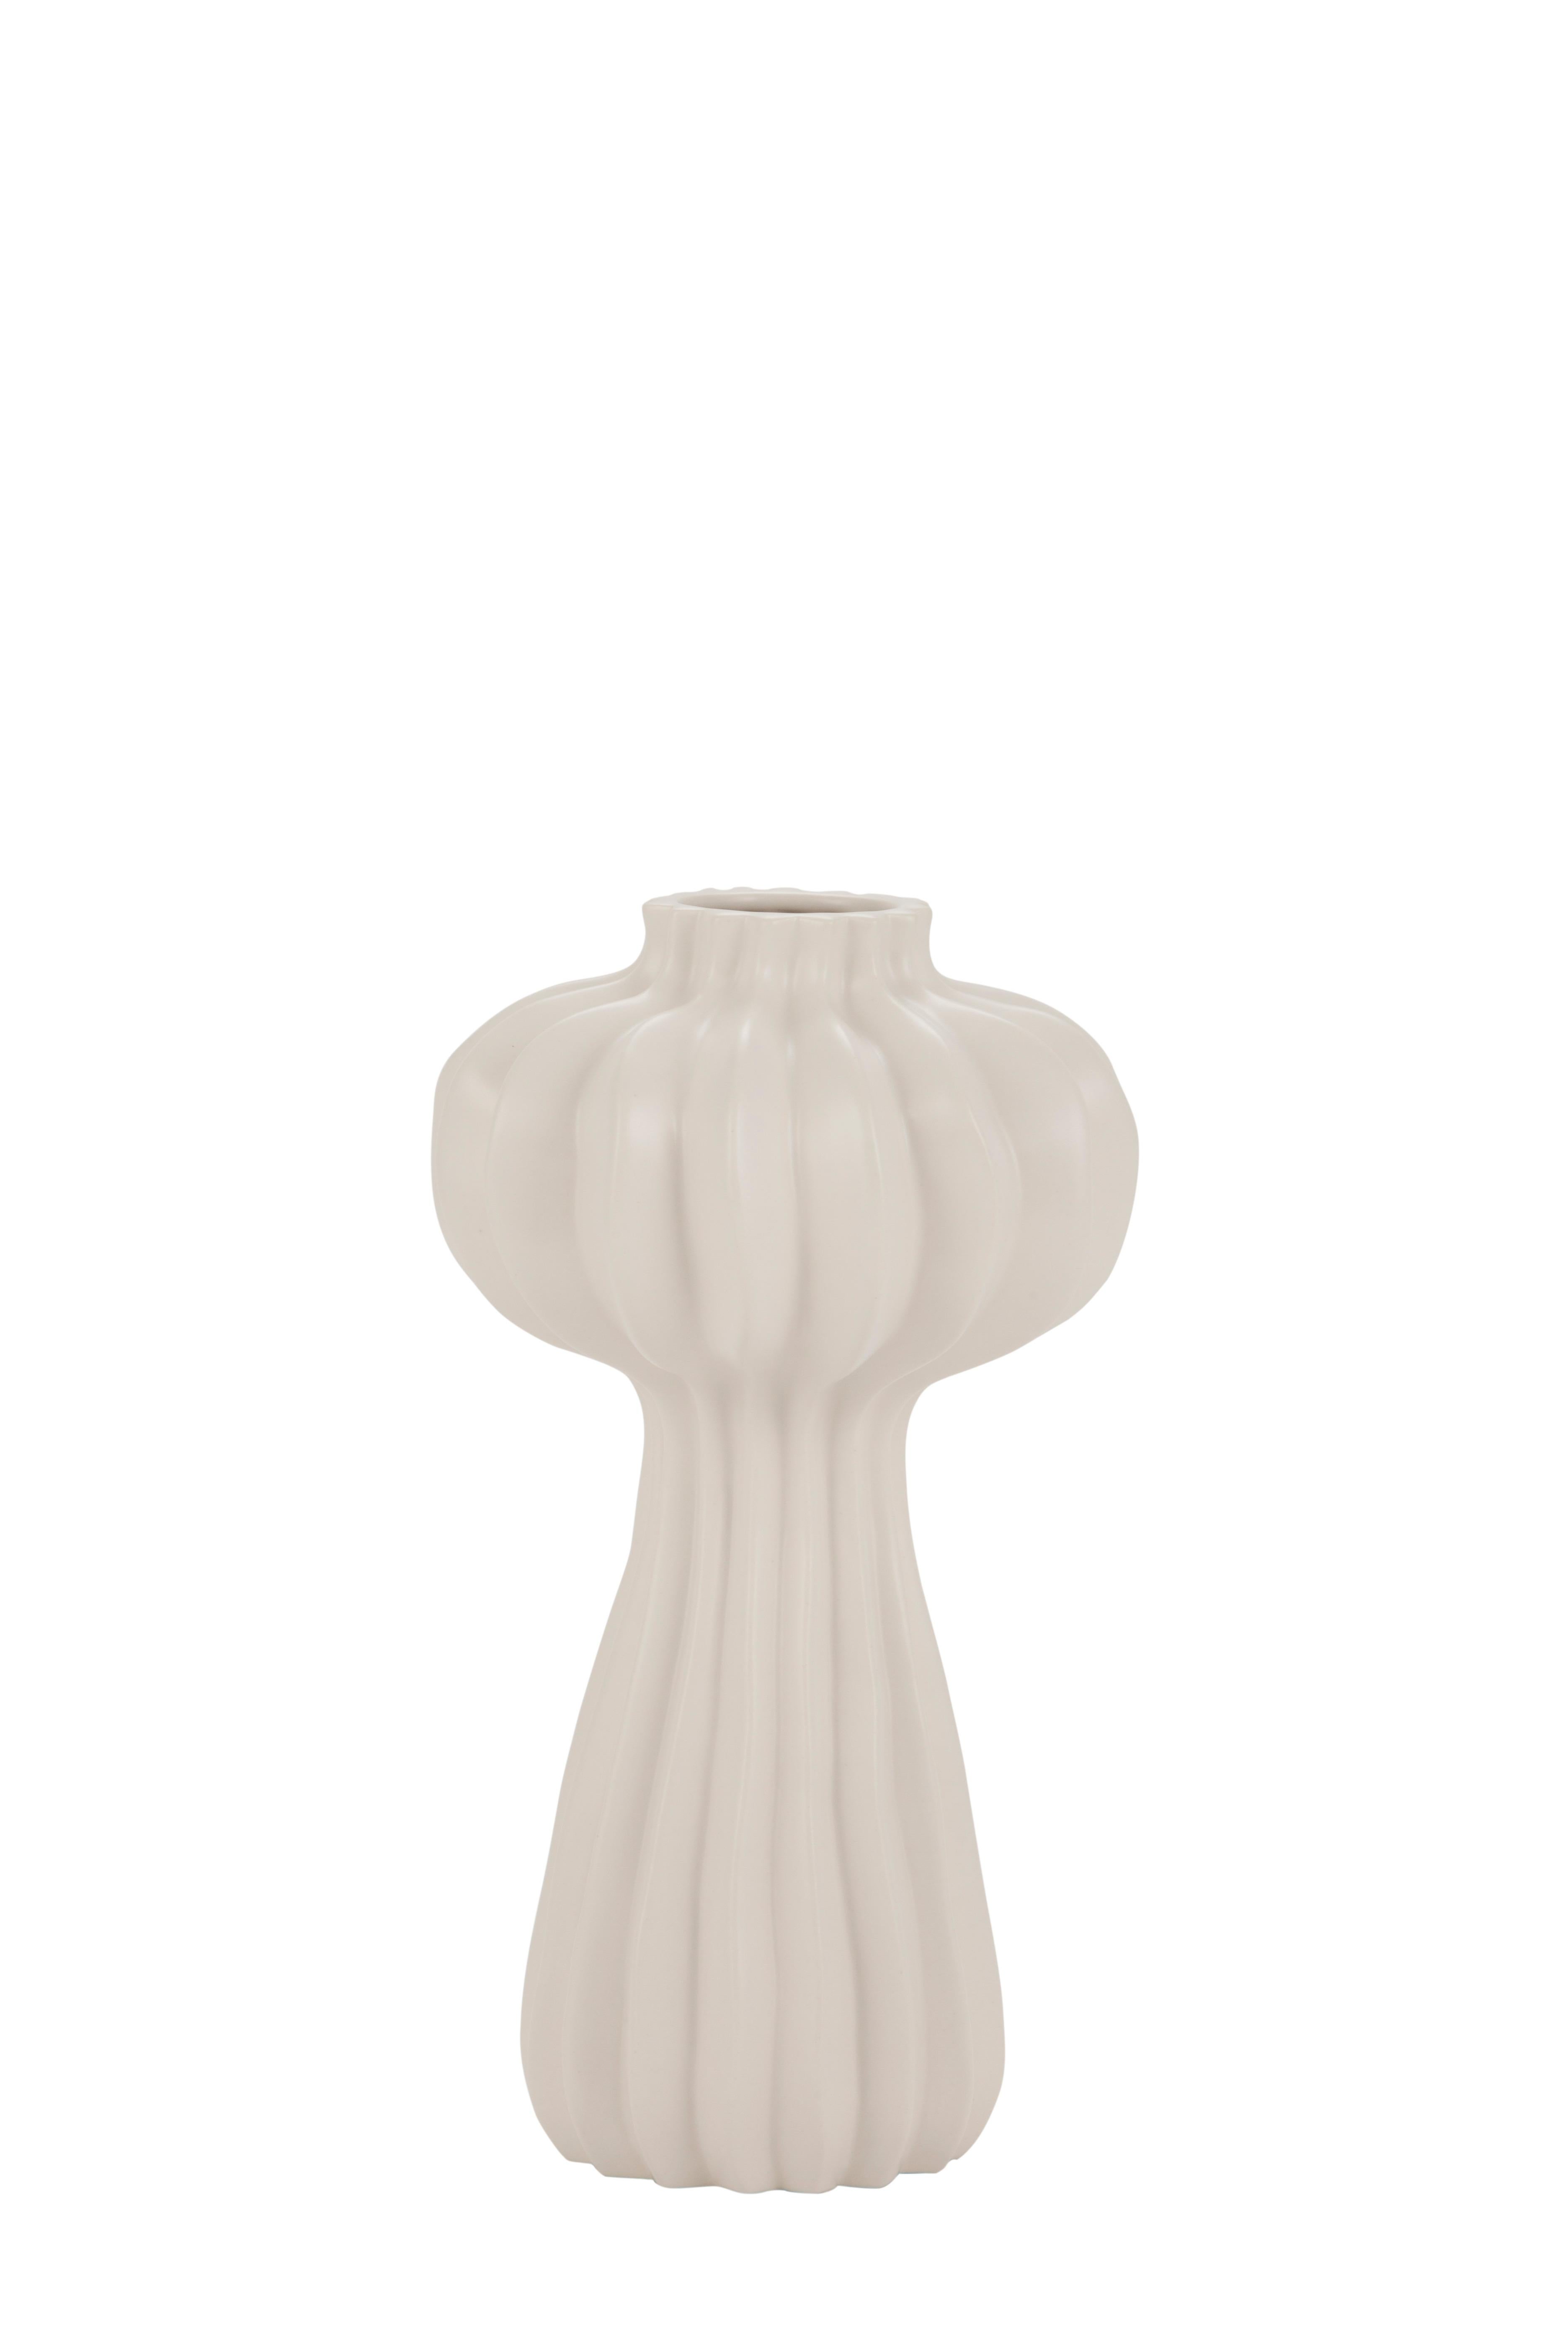 Set/3 Vases, Ceramic Vases, White, Handmade in Portugal by Lusitanus Home For Sale 7